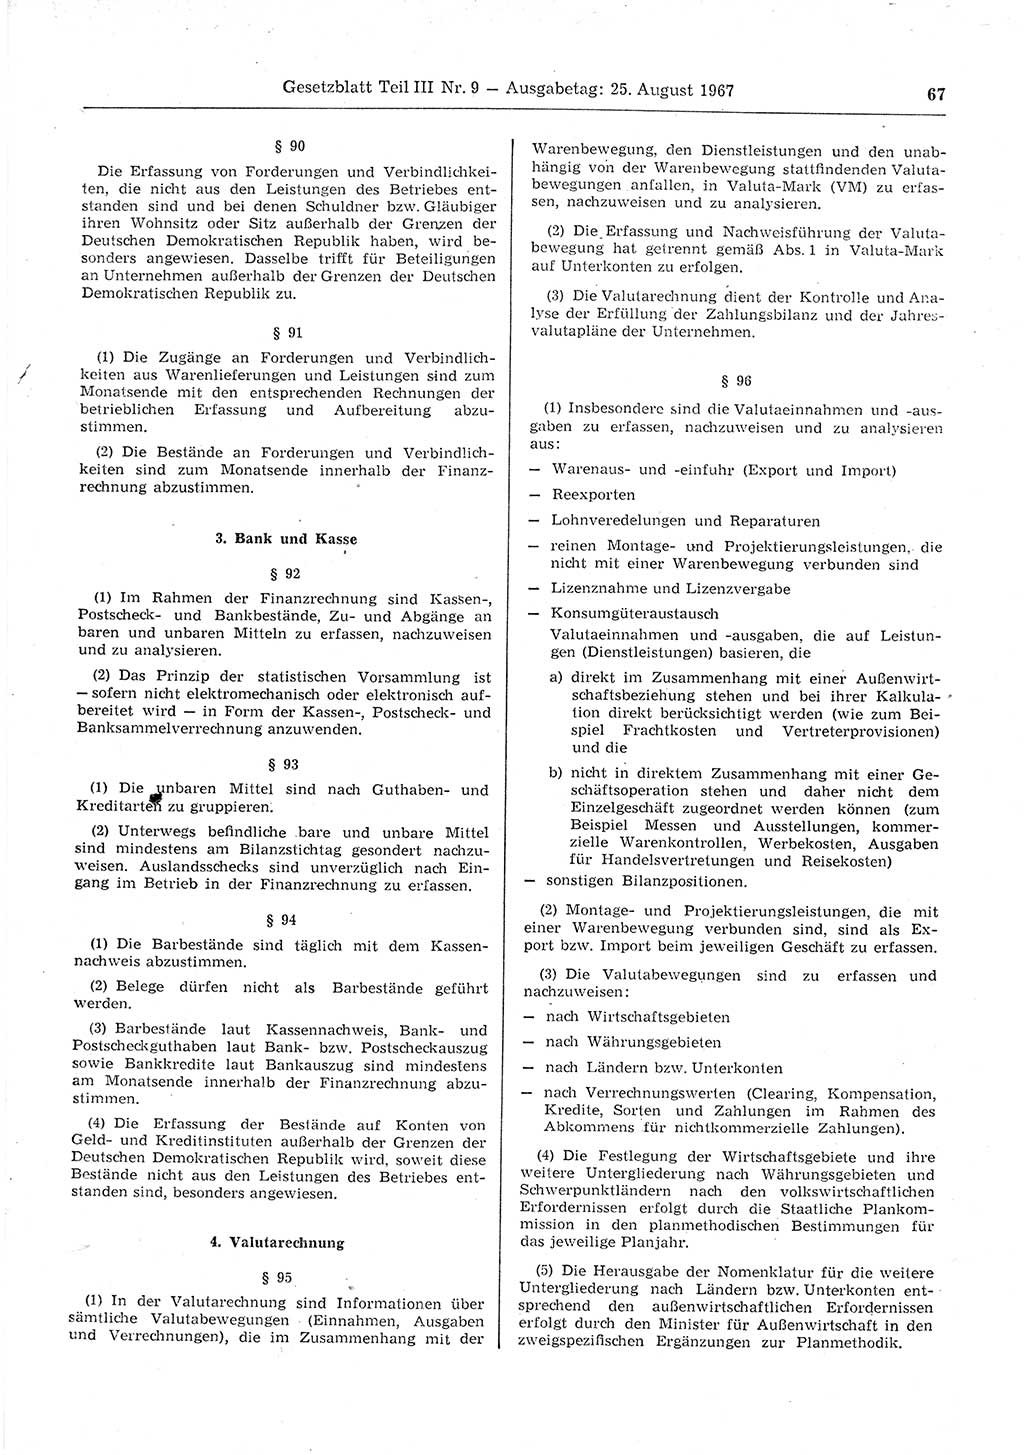 Gesetzblatt (GBl.) der Deutschen Demokratischen Republik (DDR) Teil ⅠⅠⅠ 1967, Seite 67 (GBl. DDR ⅠⅠⅠ 1967, S. 67)